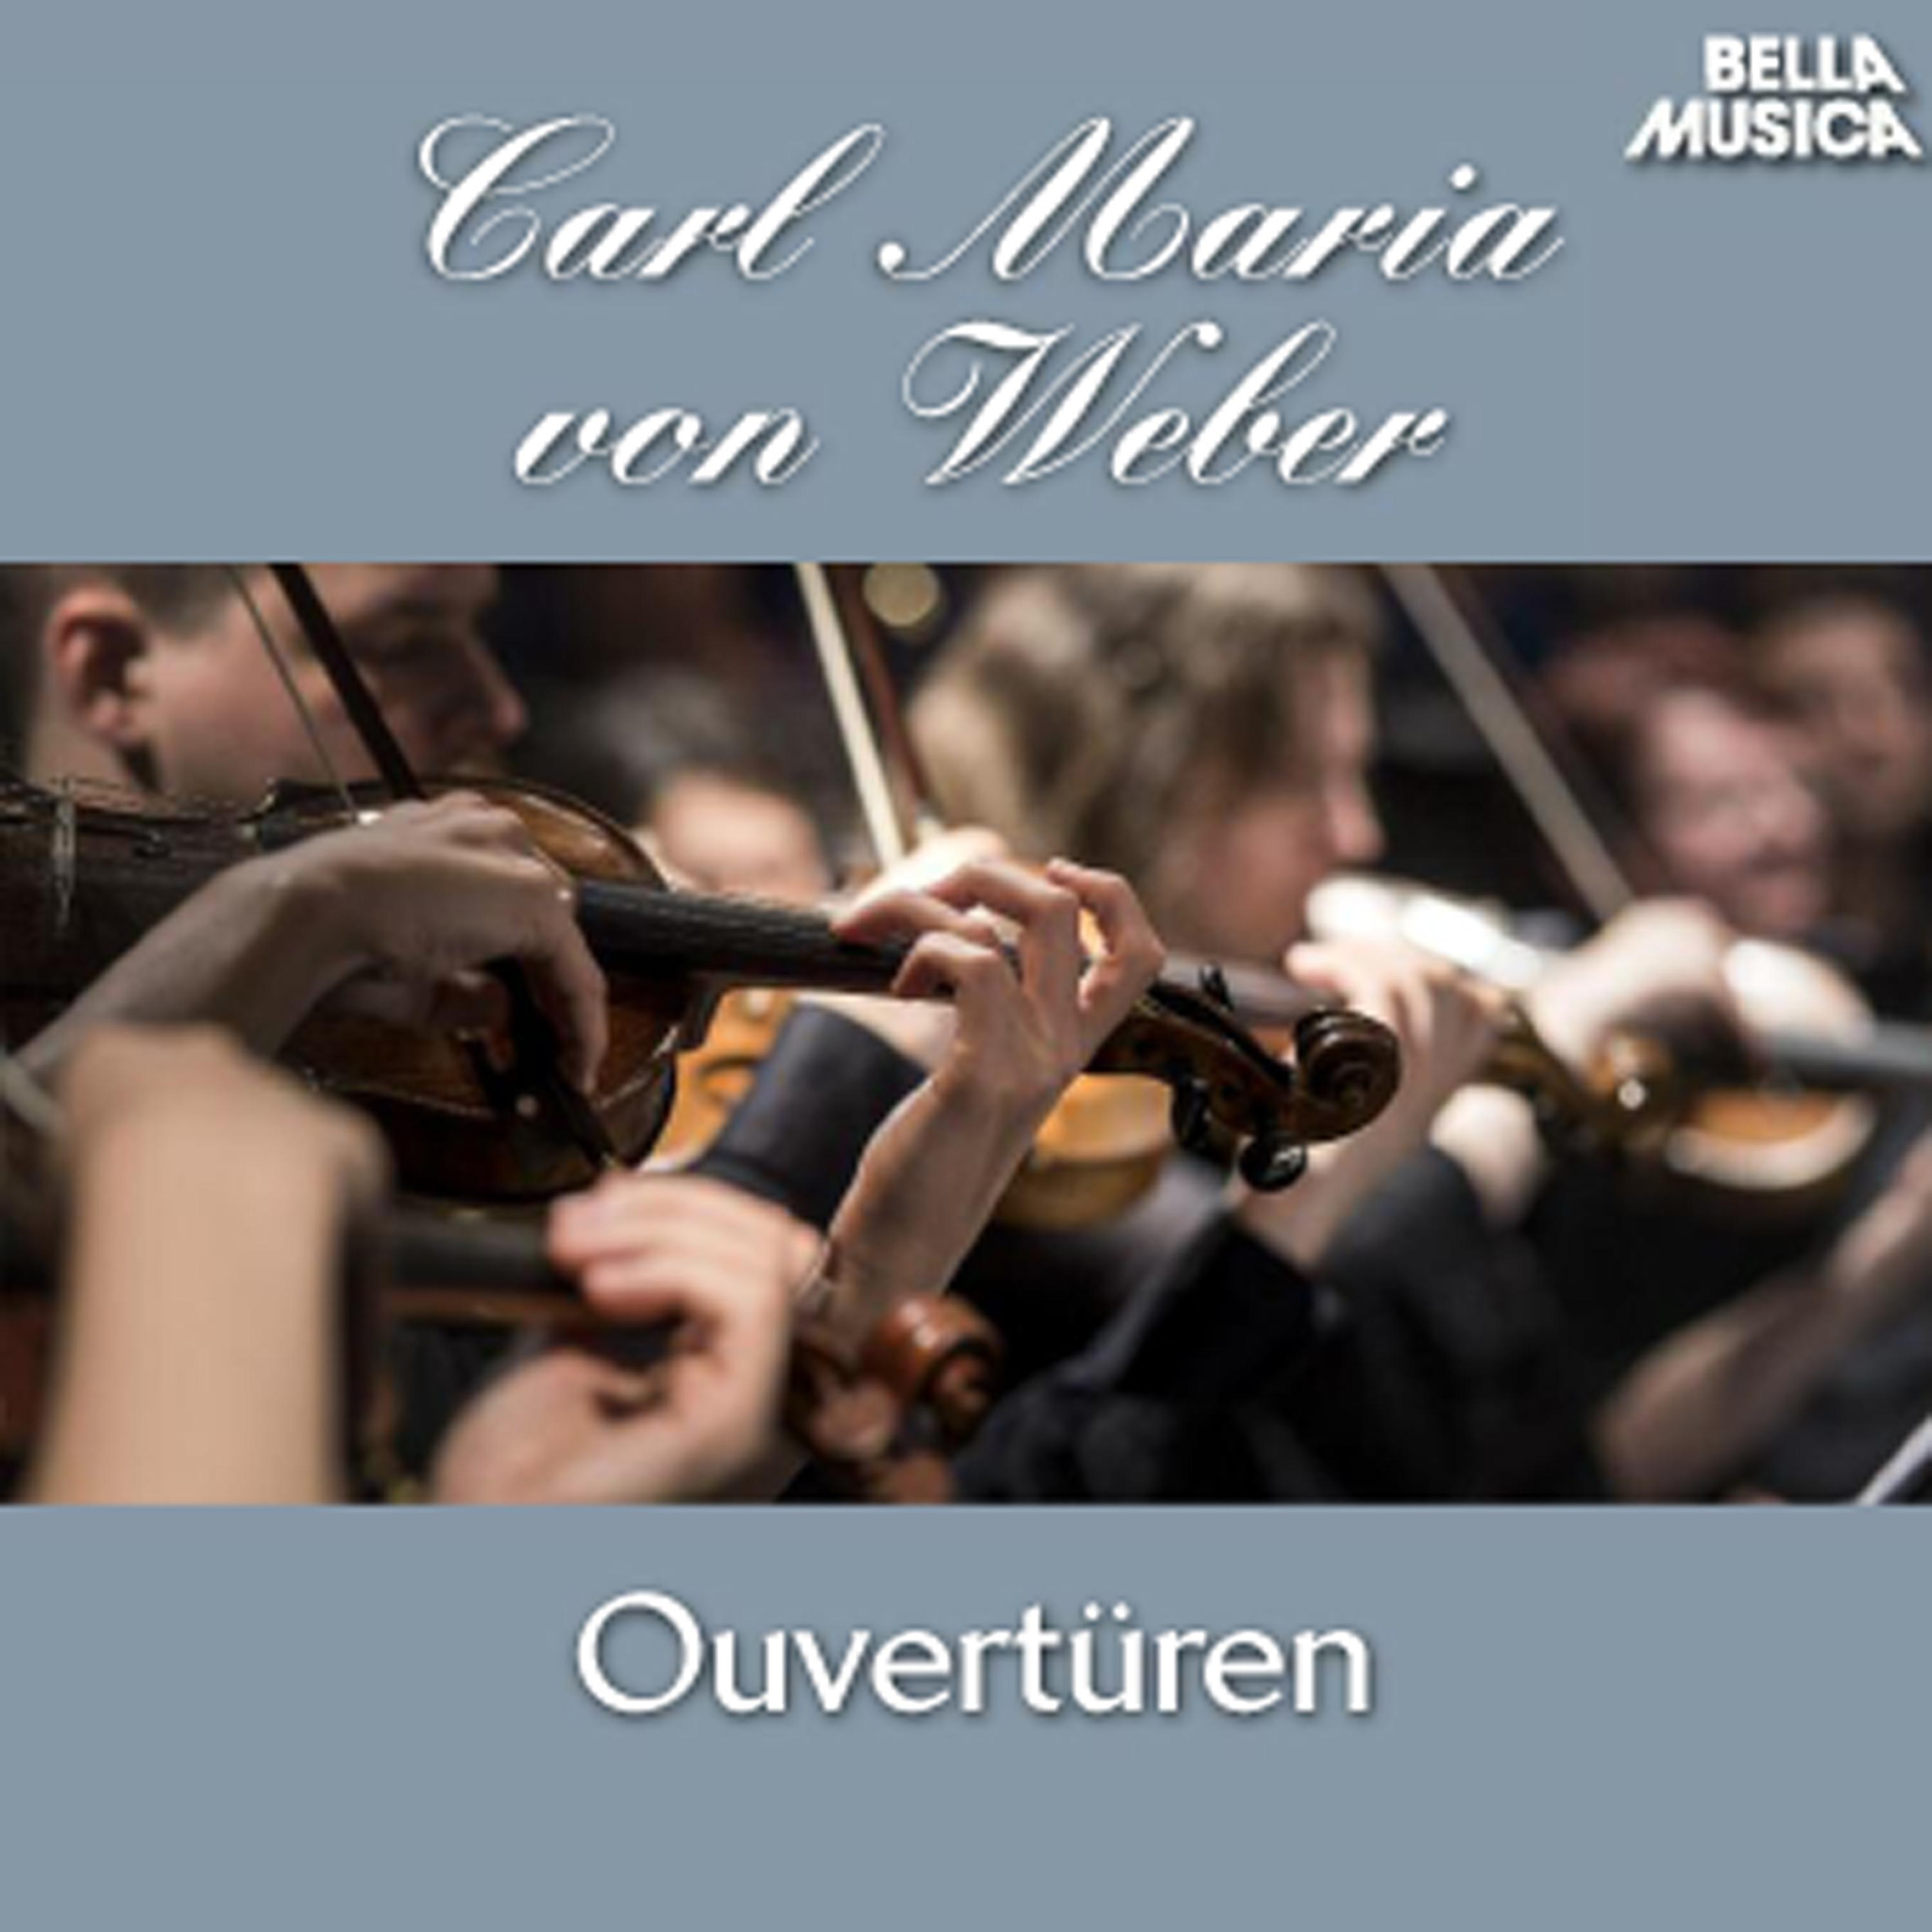 Euryanthe: Ouvertü re fü r Orchester, Op. 81